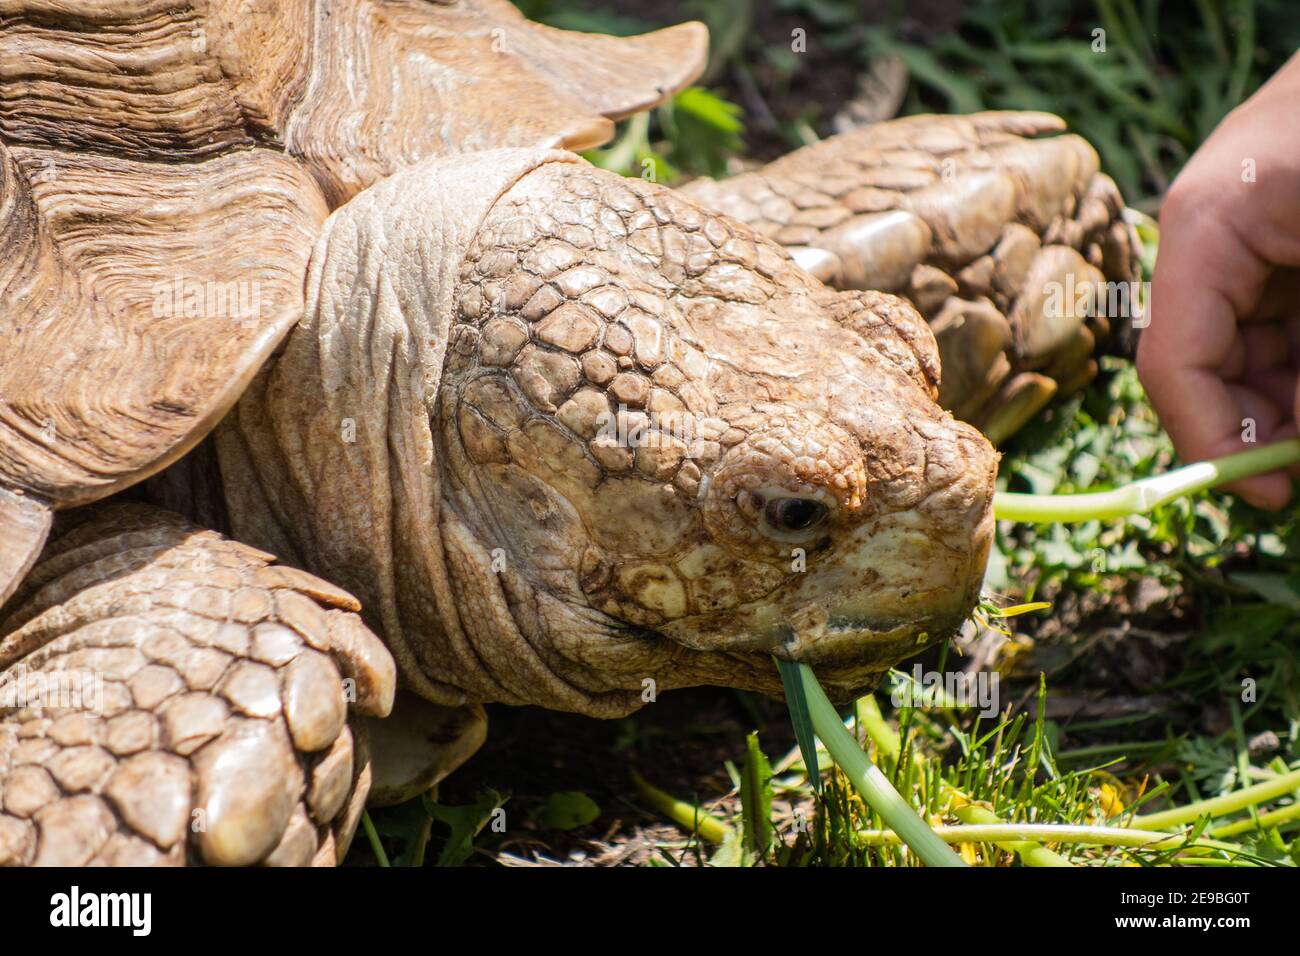 Gros plan de la tête d'une tortue géante sous le soleil éclatant dans l'herbe verte. Un homme nourrit une tortue avec des pissenlits. Mise au point sélective. Banque D'Images